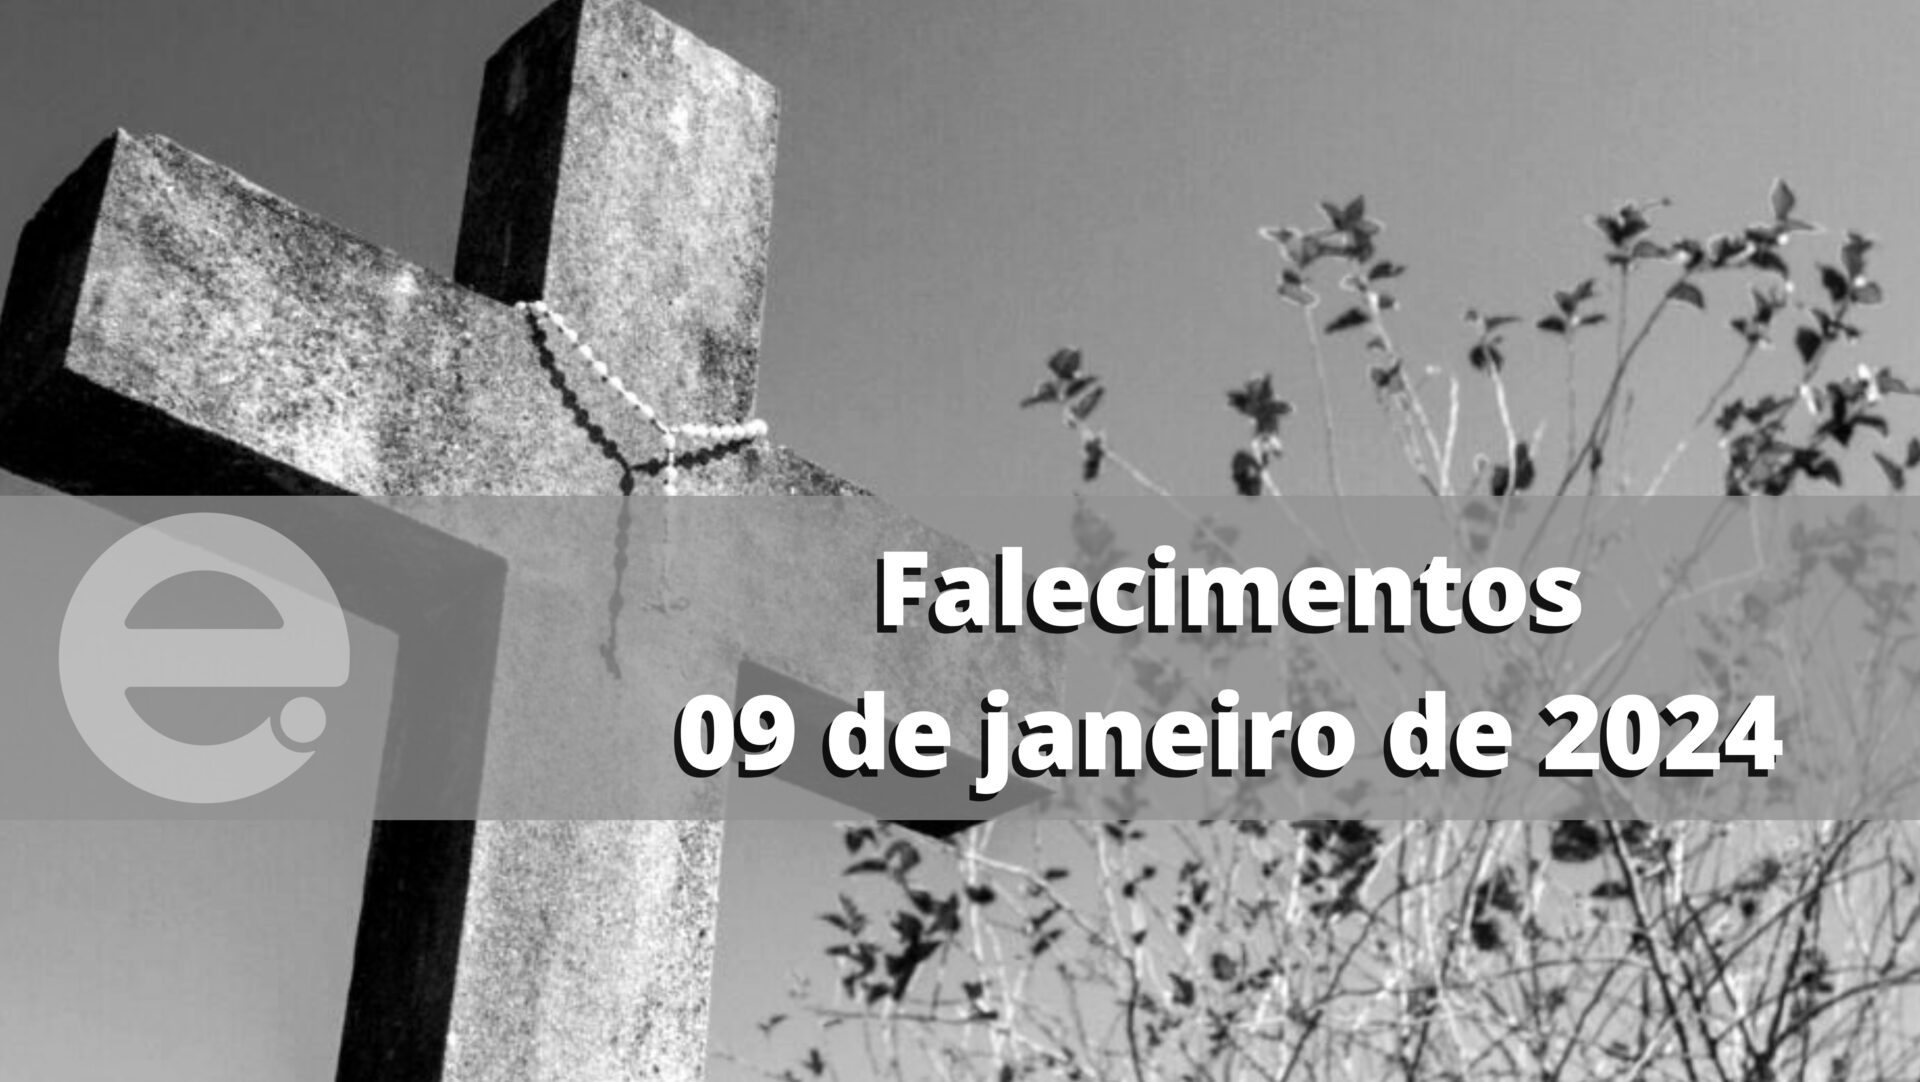 Confira os falecimentos desta terça-feira, 09 de janeiro de 2024, em Limeira